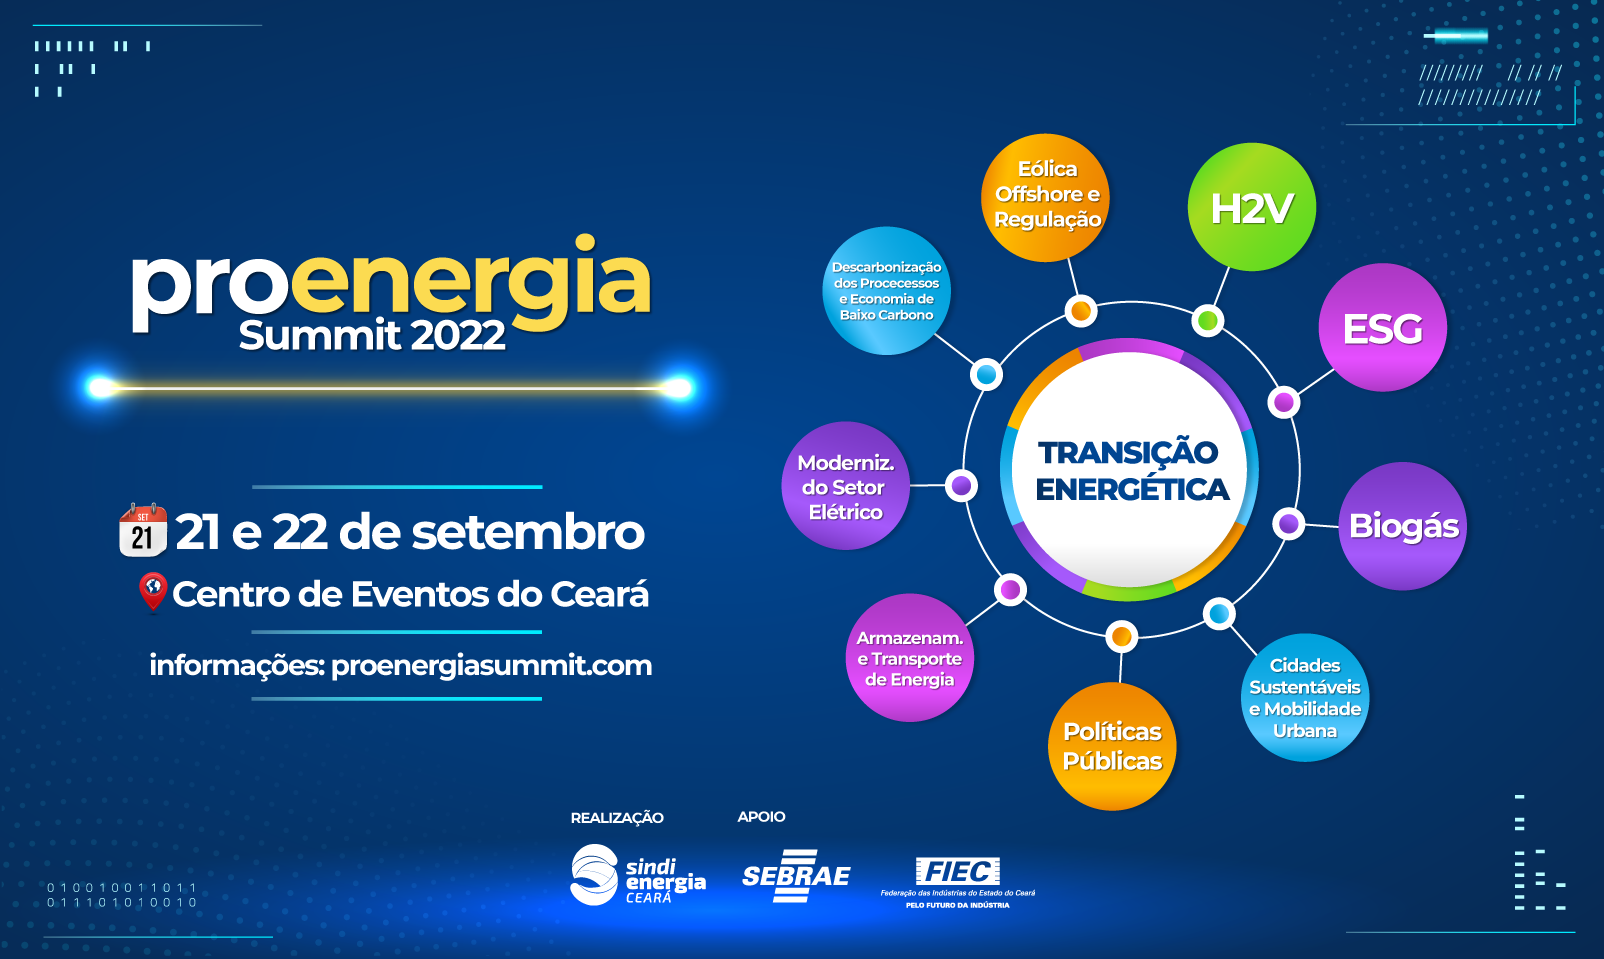 Proenergia Summit 2022 ocorrerá nos dias 21 e 22 de setembro, no Centro de Eventos do Ceará